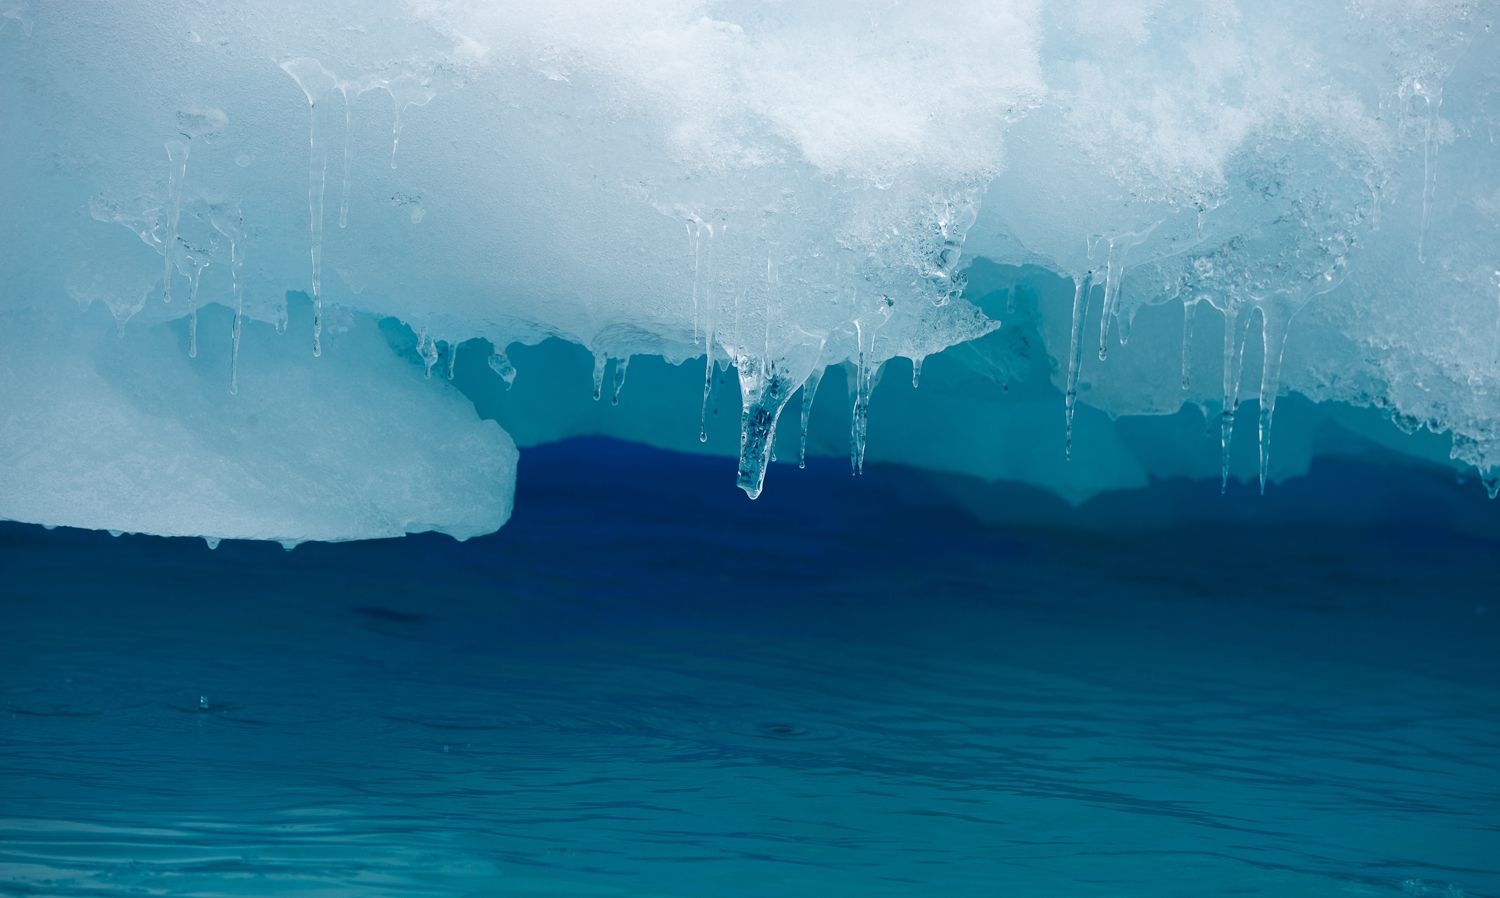 一场说走就走的贝加尔湖蓝冰之旅_行摄天下-摄影站